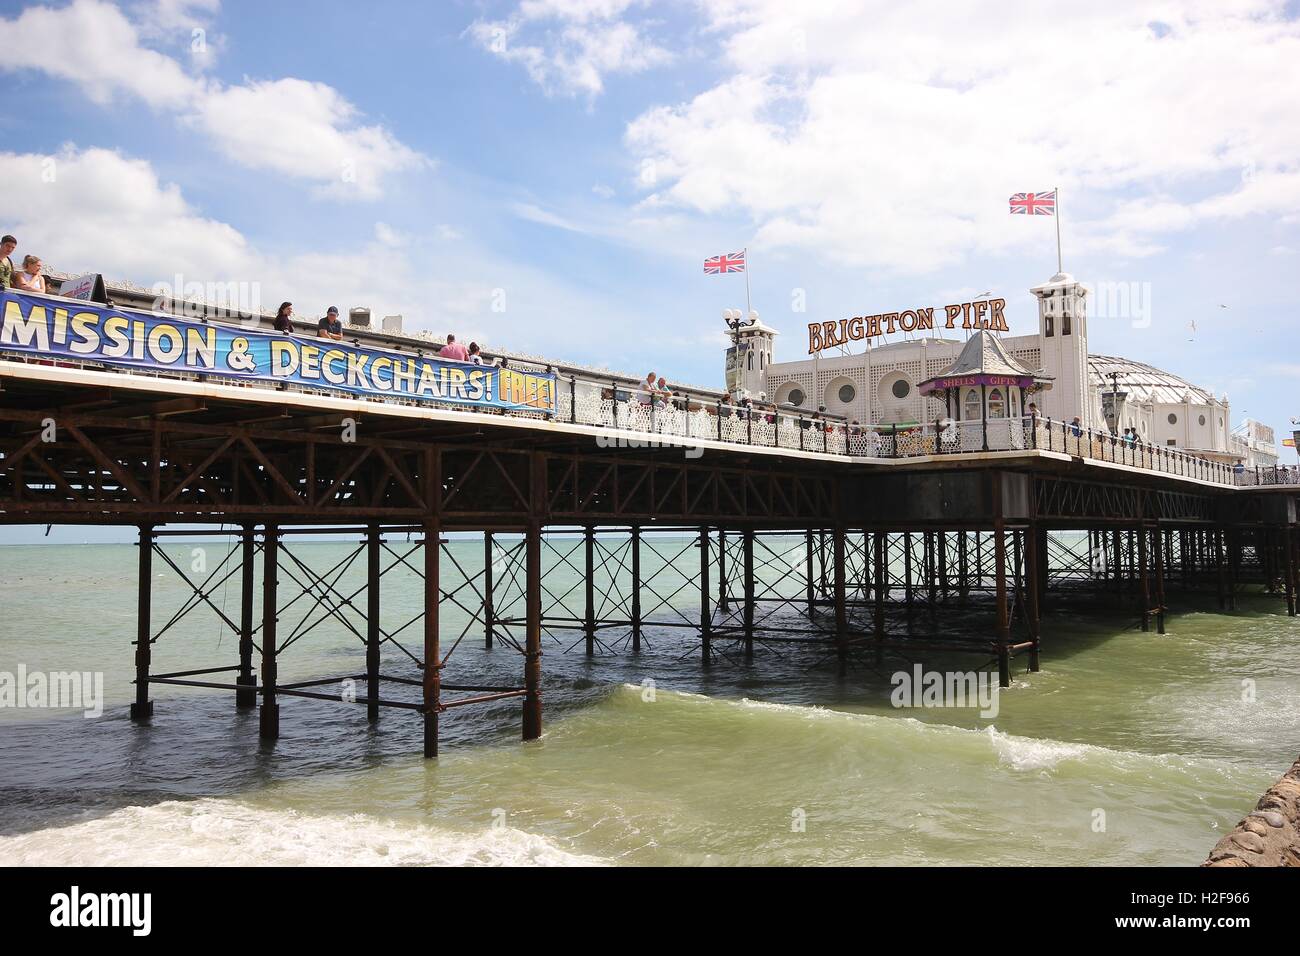 El famoso Brighton Pier shot desde abajo en un hermoso día soleado, Inglaterra, photoarkive Foto de stock